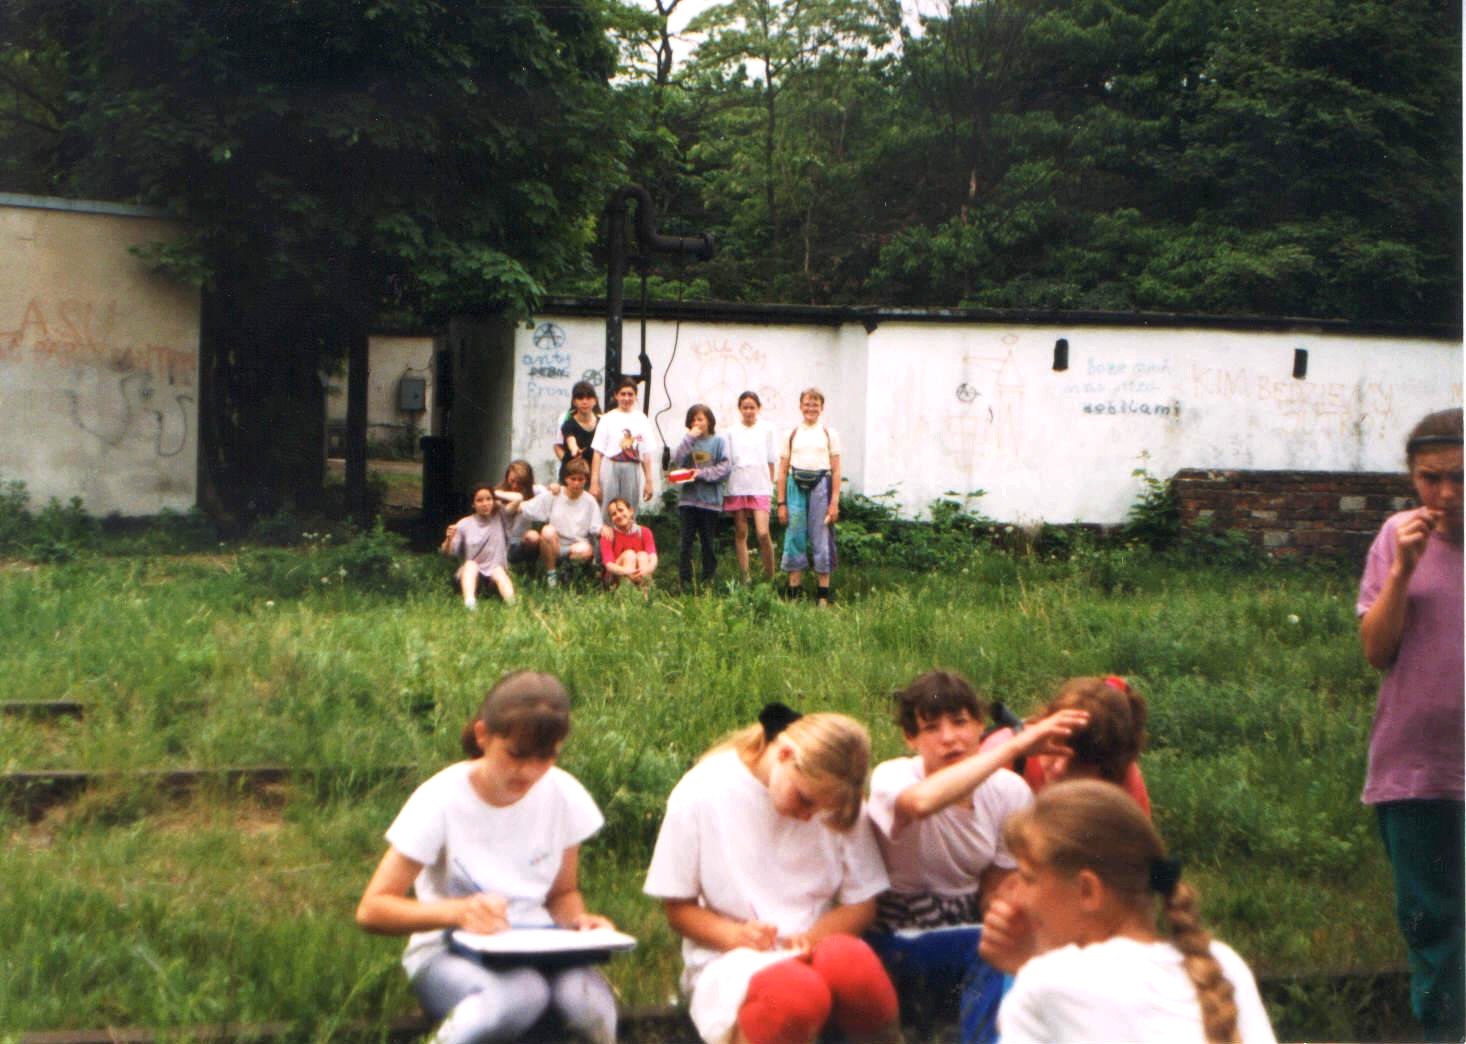 Maj lub czerwiec 1995 roku. Uczniowie Szkoy podstawowej z Przytoku  podczas imprez oglnomiejskiego dnia sportu. Na torach siedza dziewczyny szkicujce plan stacji a przed pomp wodn pozuj ich koleanki.
